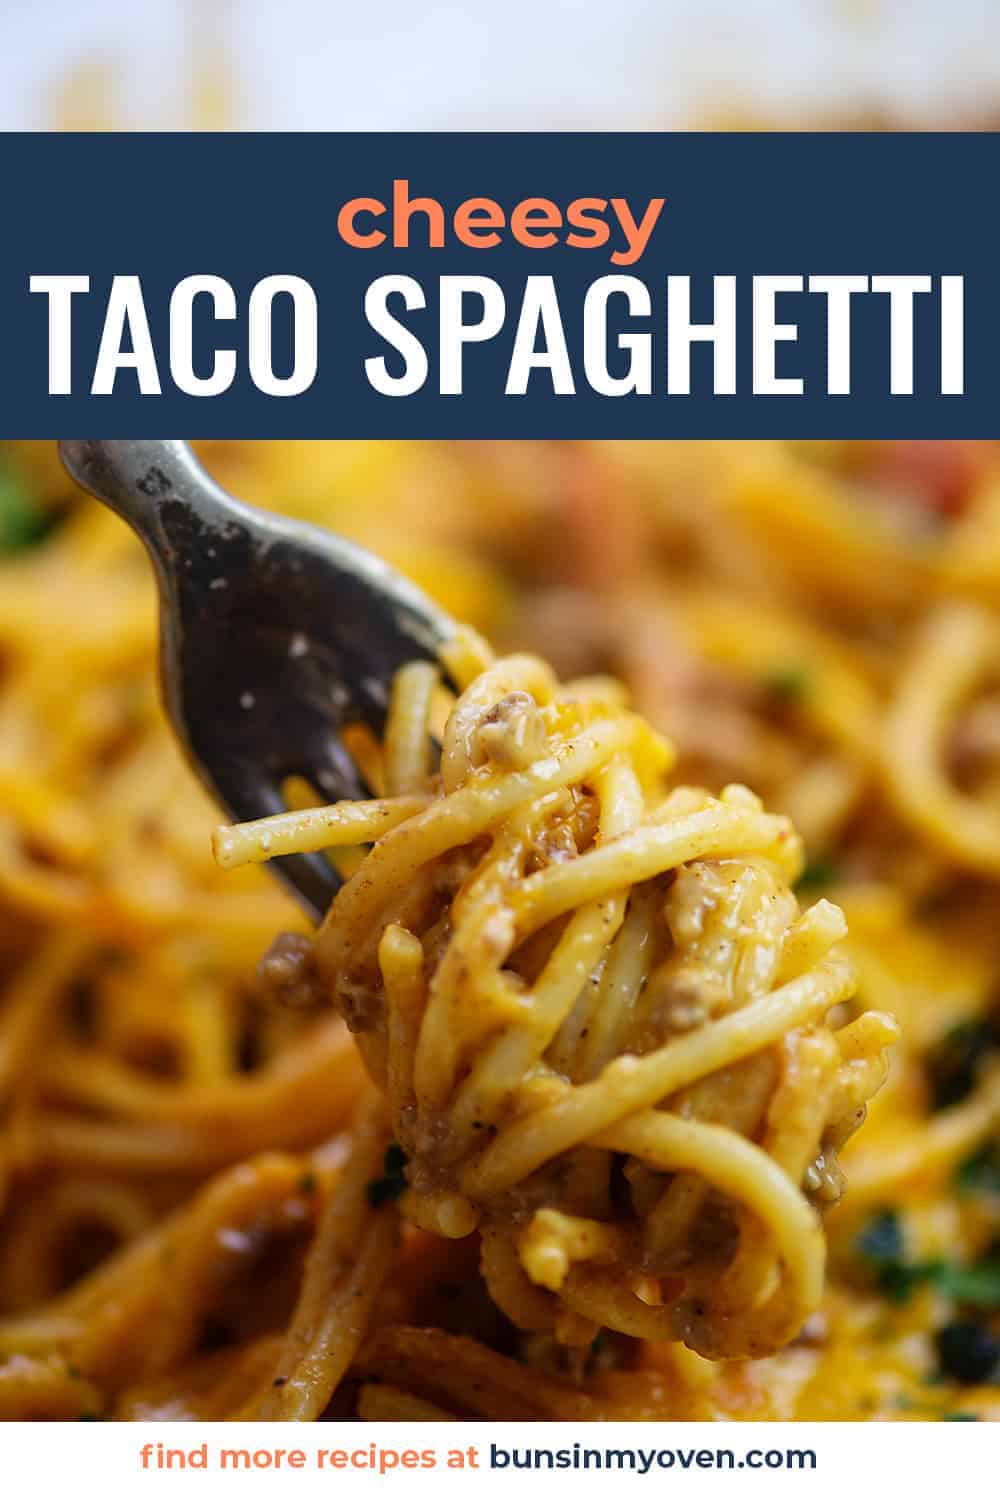 taco spaghetti on fork.